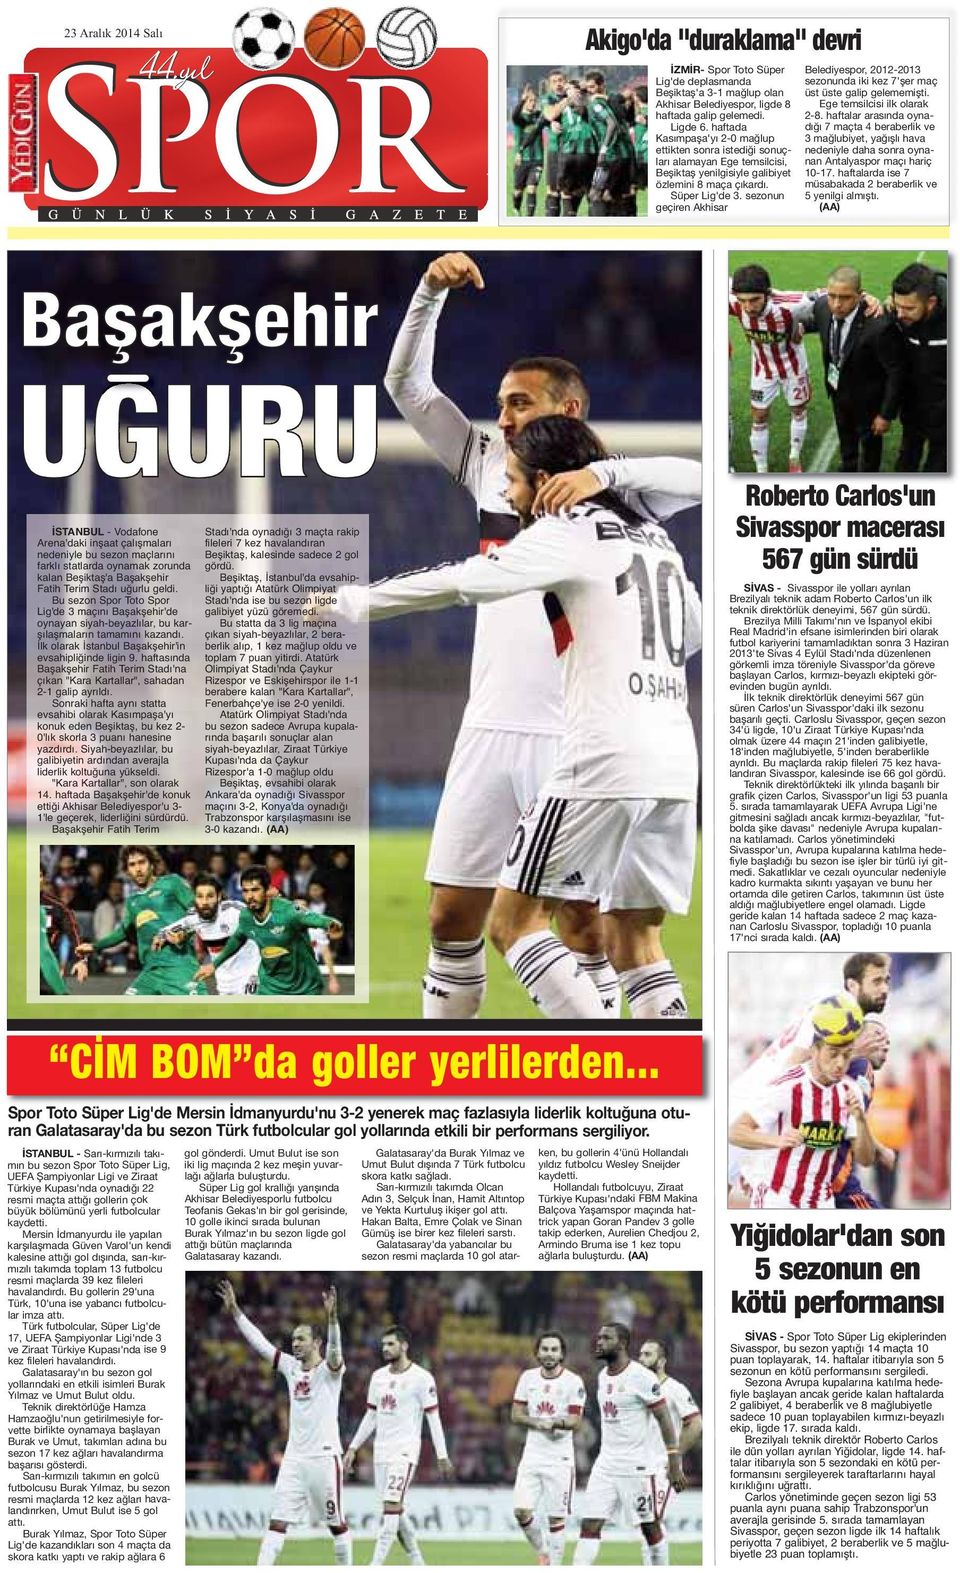 sezonun geçiren Akhisar Belediyespor, 2012-2013 sezonunda iki kez 7'şer maç üst üste galip gelememişti. Ege temsilcisi ilk olarak 2-8.